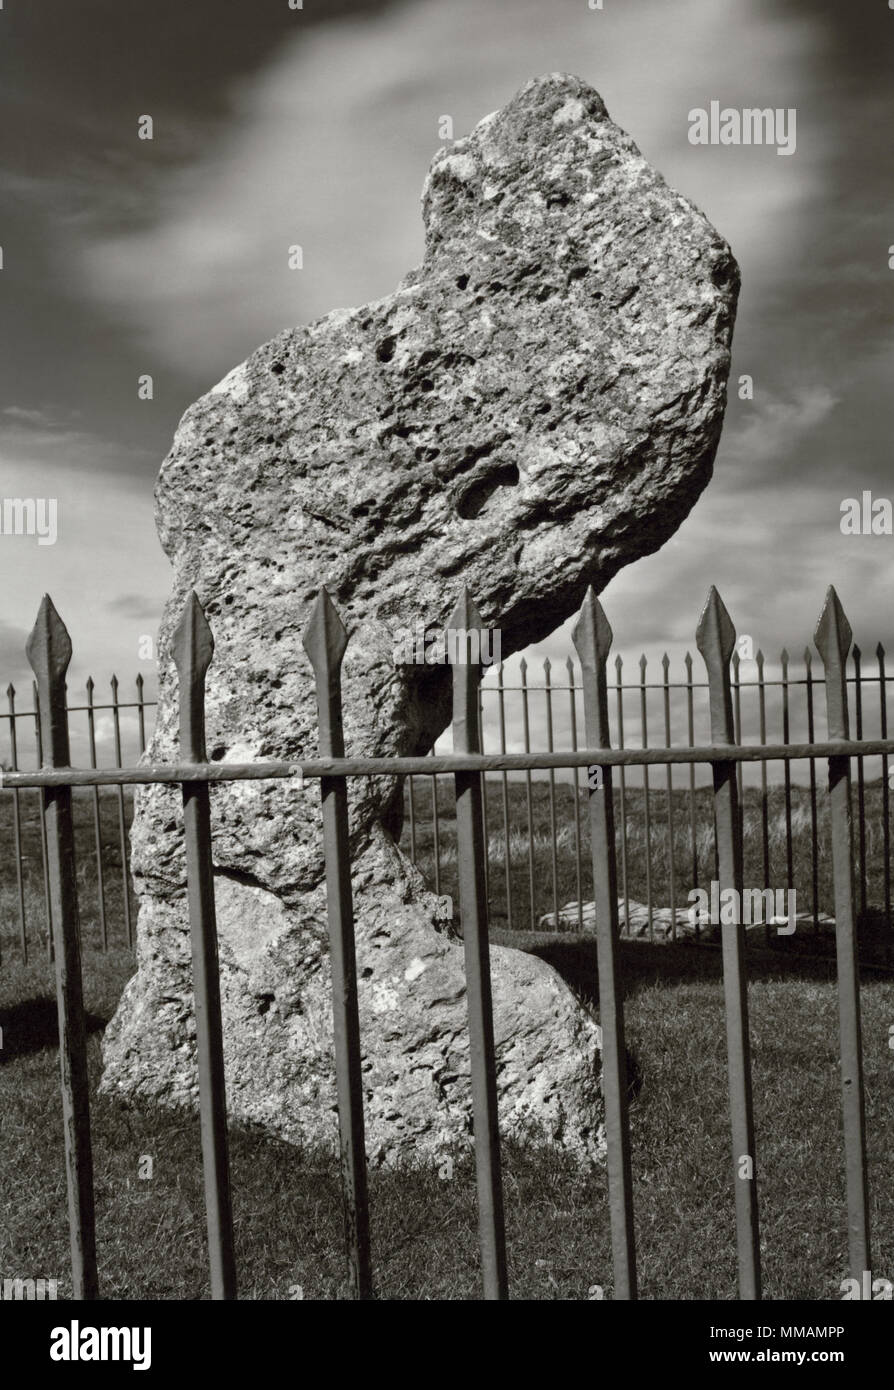 Visualizzare NW del re neolitico in pietra pietra permanente, Oxfordshire, Inghilterra, Regno Unito. Situato vicino alla parte superiore di un innalzamento naturale accanto a una pista di epoca preistorica. Foto Stock